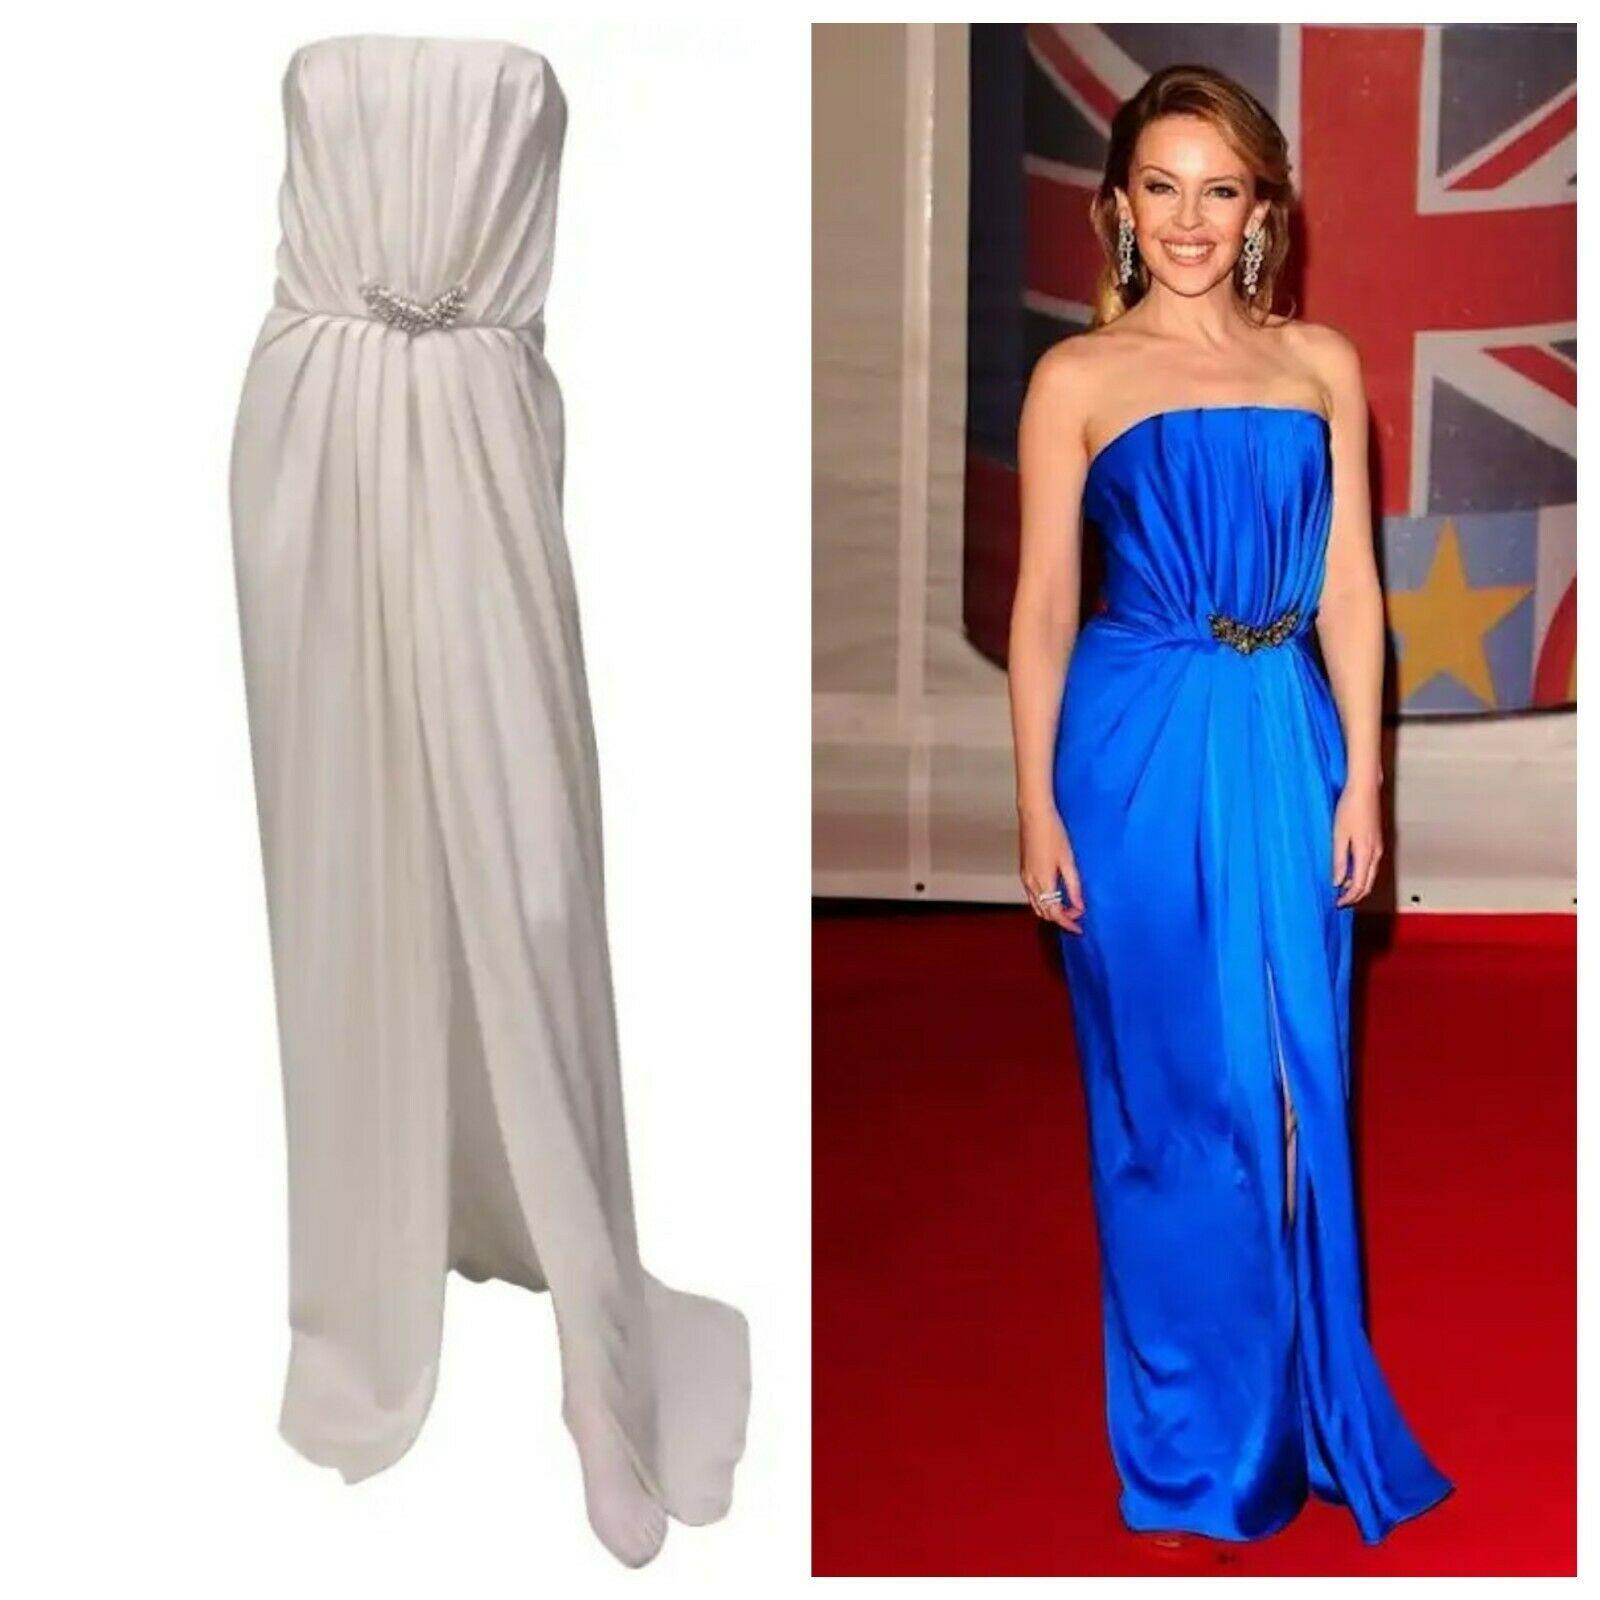 Carla Bruni-Sarkozy sah in diesem Säulenkleid von Saint Laurent umwerfend aus.
Kylie Minogue trug das gleiche Kleid bei den BRIT Awards.
Jetzt haben Sie die Chance, diese zarte und unglaublich elegante Kreation zu erwerben.
Farbe: Weiß
100%